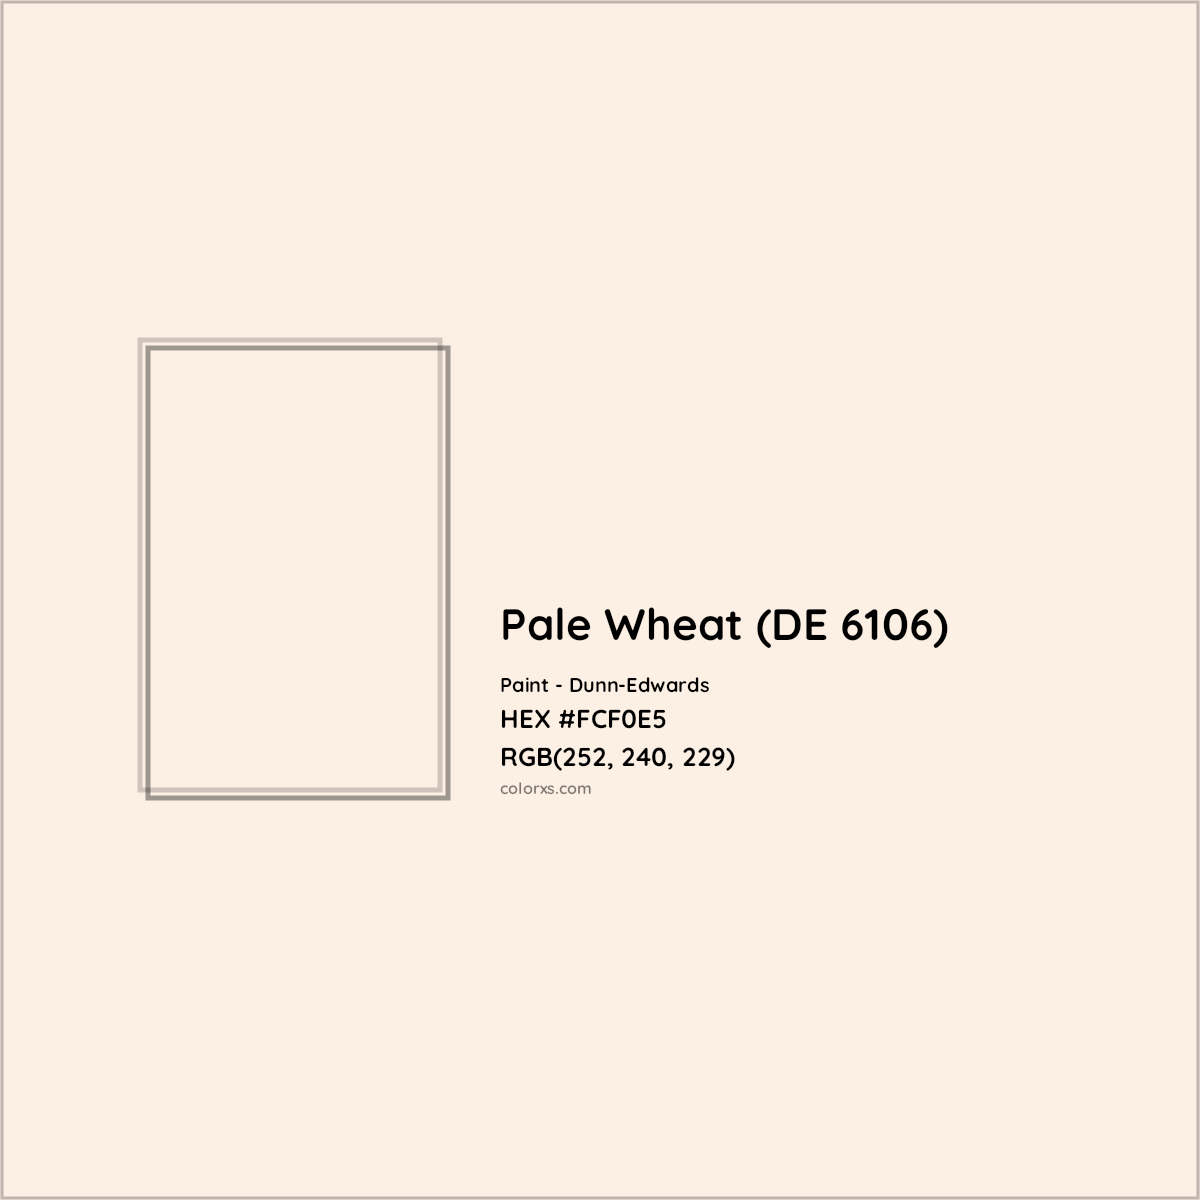 HEX #FCF0E5 Pale Wheat (DE 6106) Paint Dunn-Edwards - Color Code